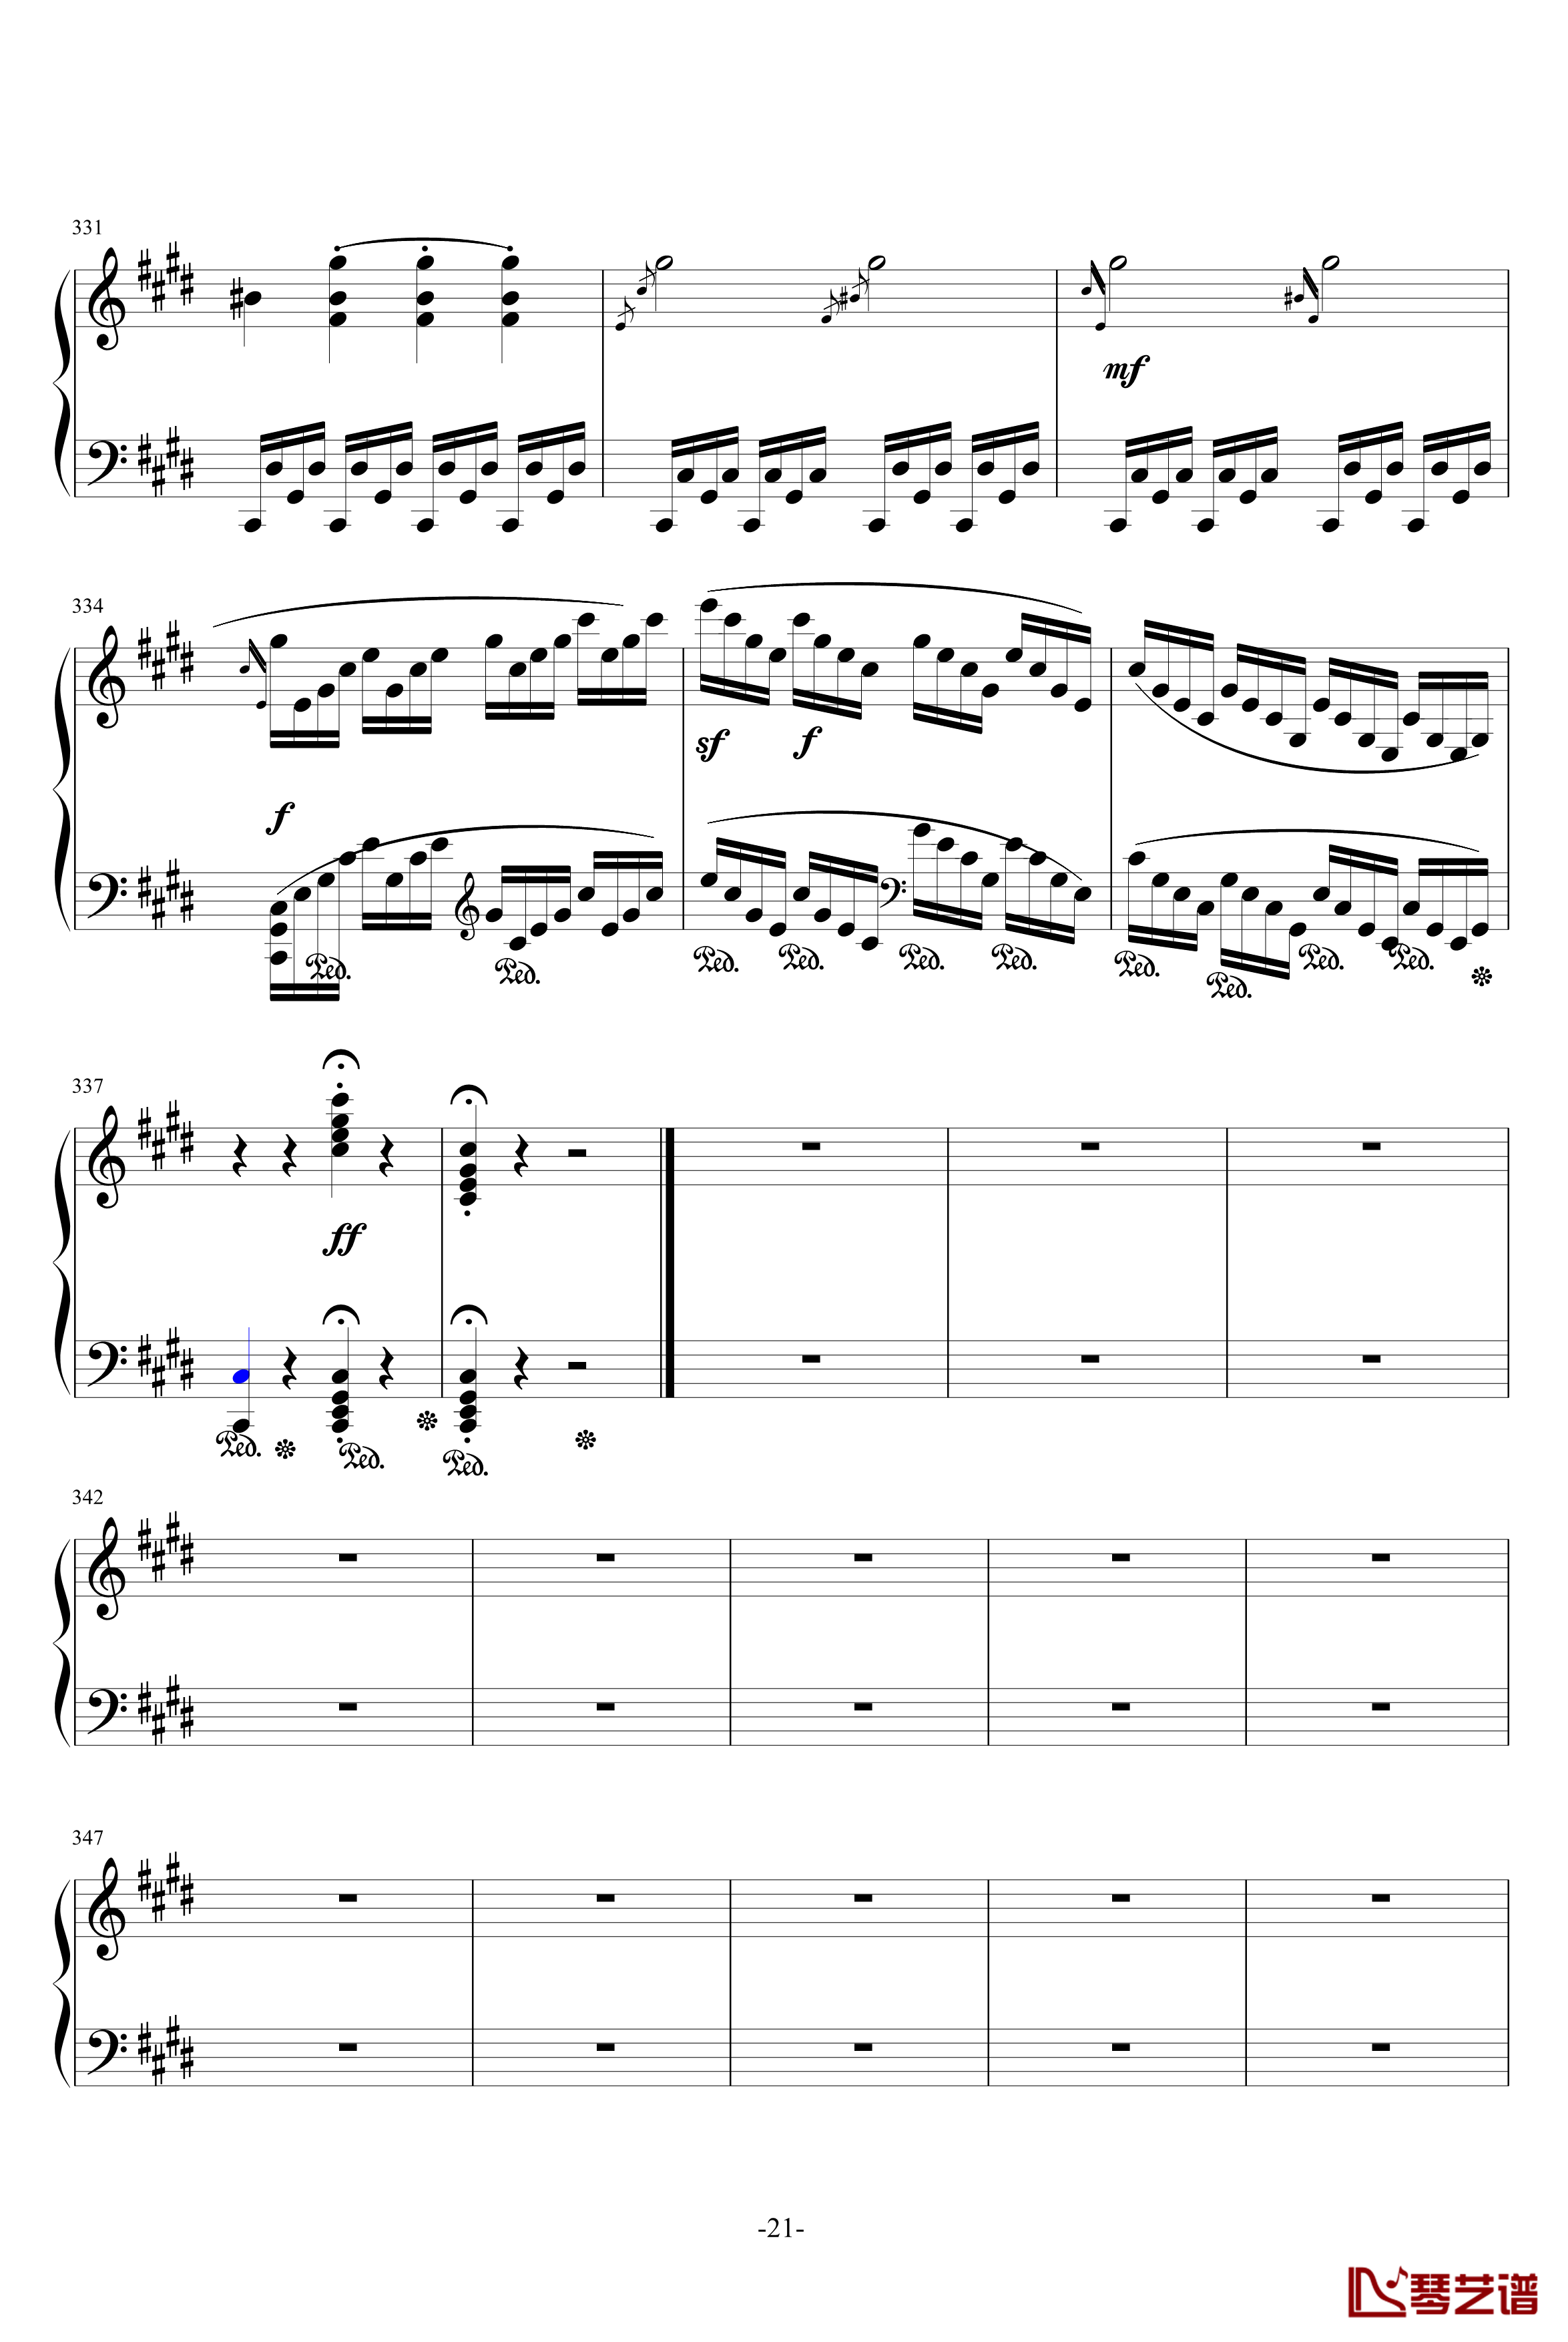 月光奏鸣曲钢琴谱-1，2，3乐章-贝多芬-beethoven21